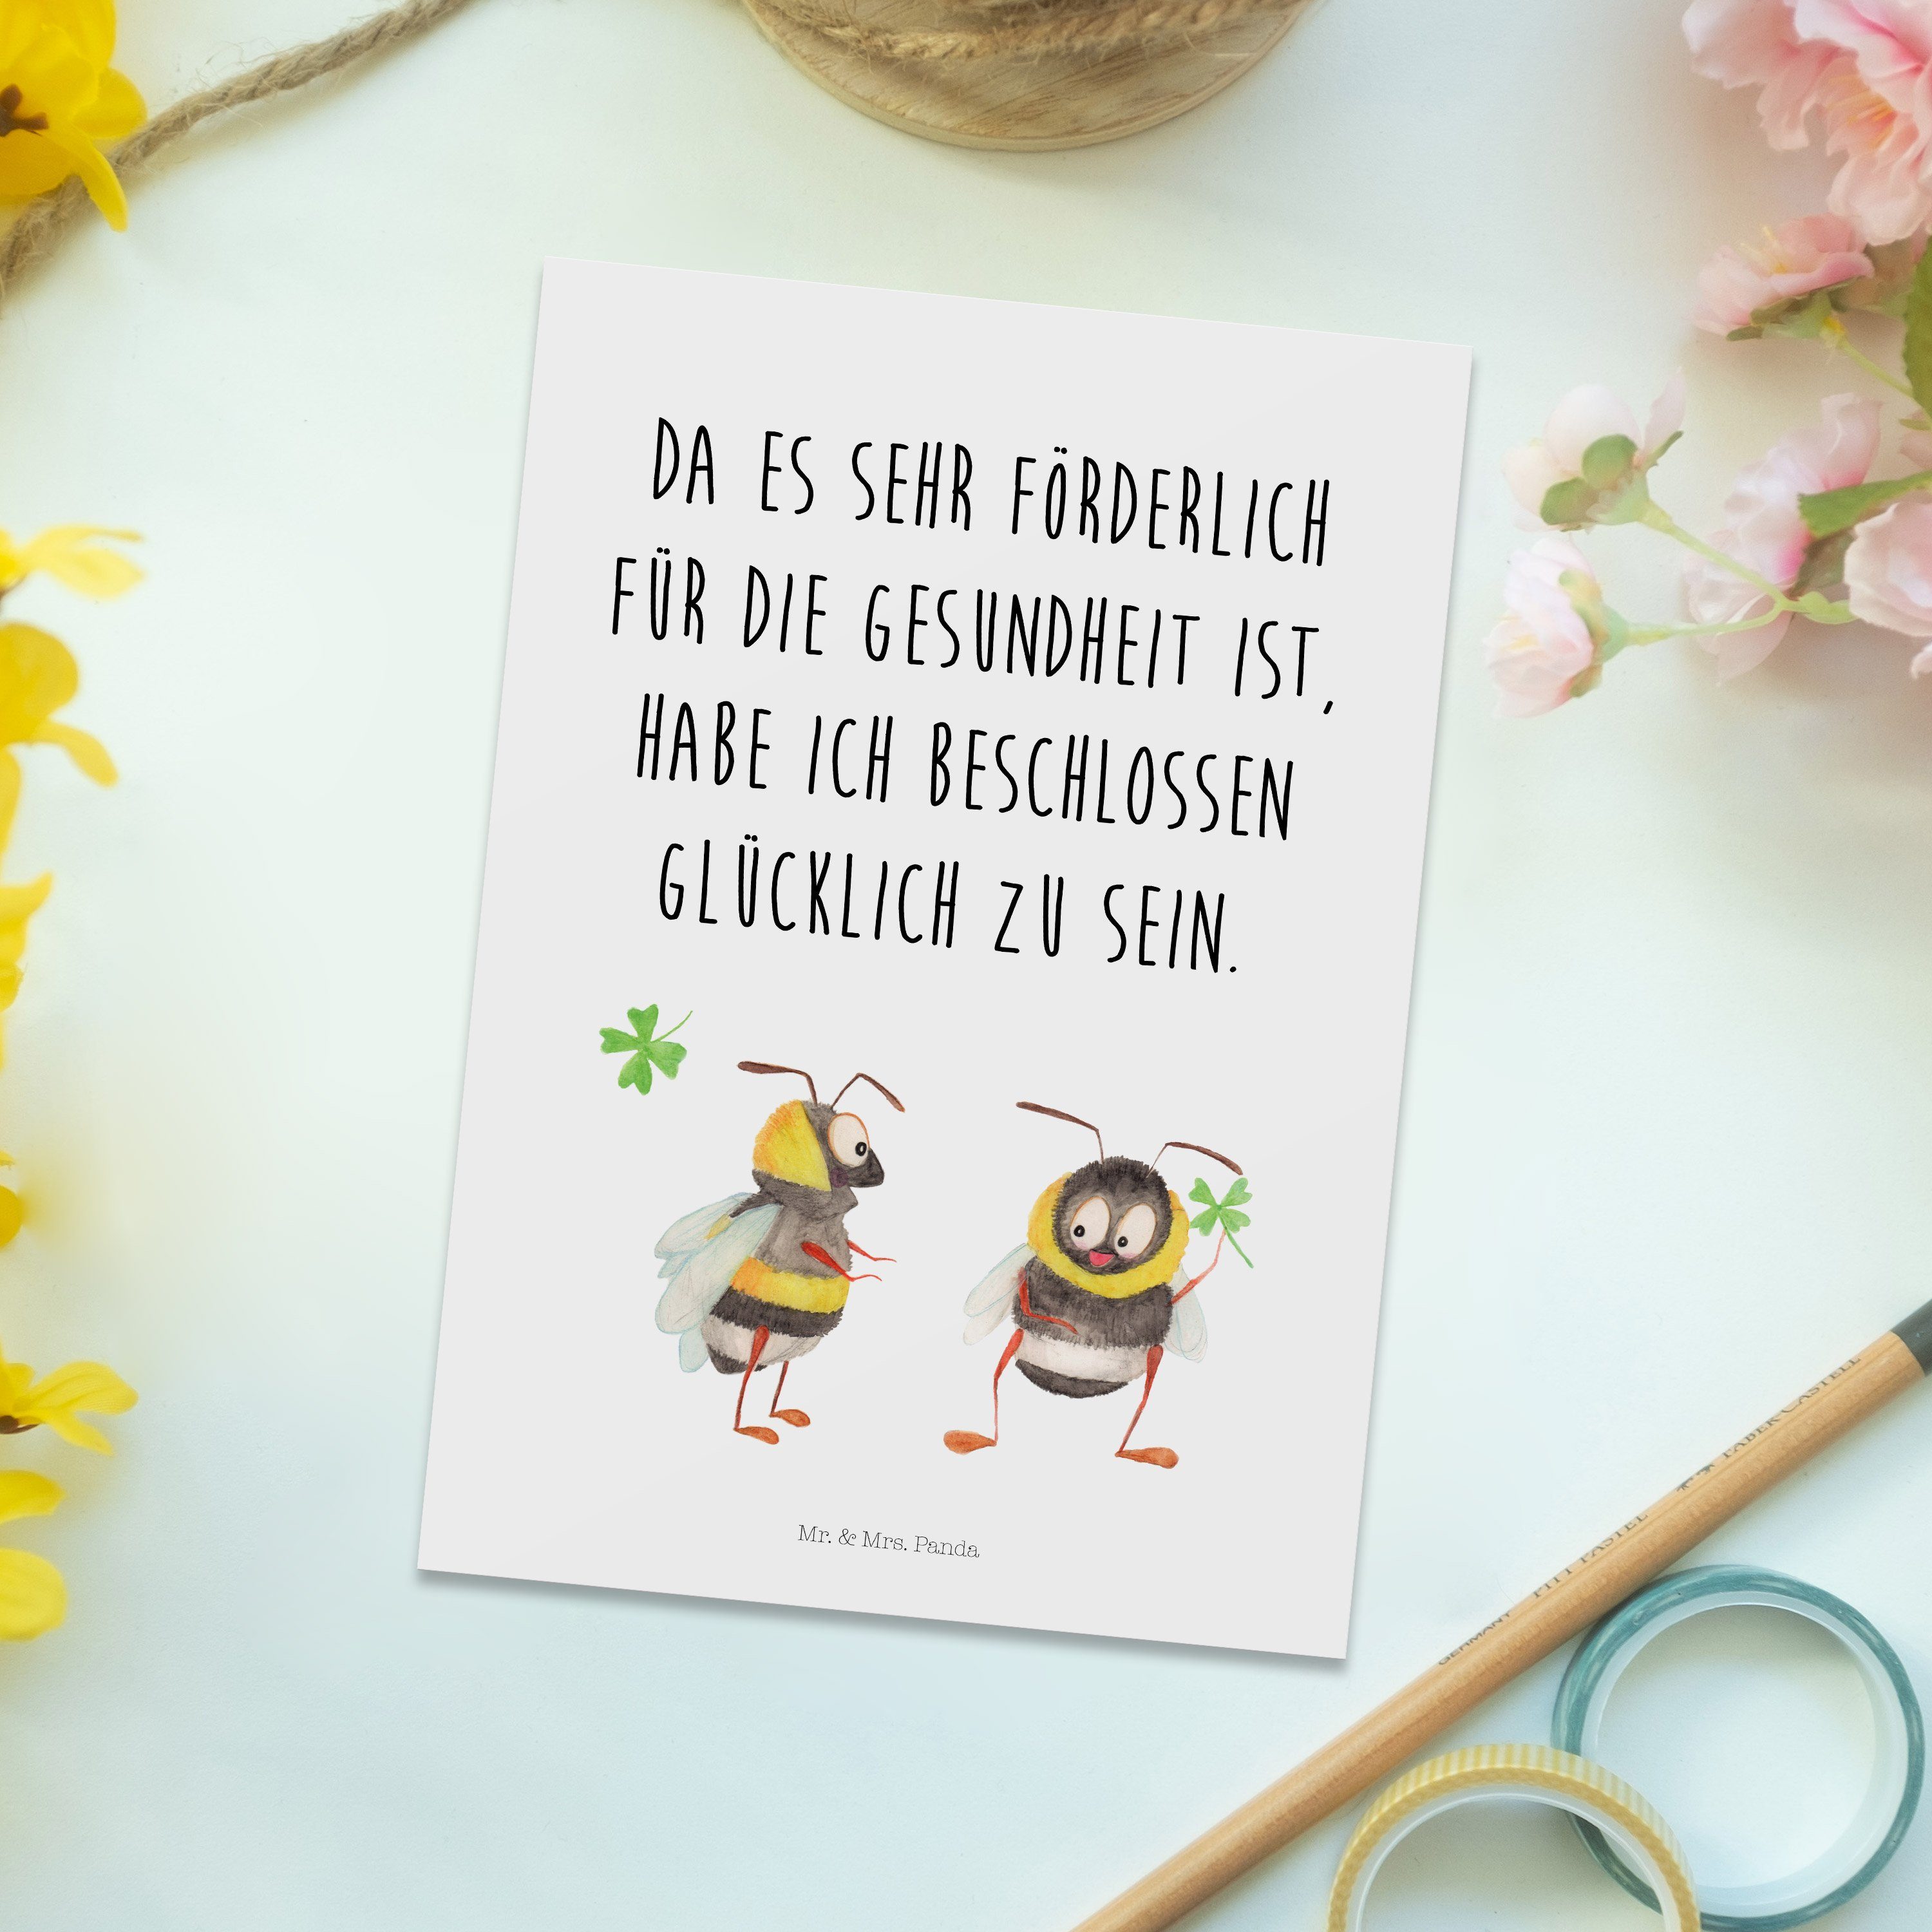 Mr. Panda Geschenk, Kleeblatt & Geburtstagskarte, - Hummeln Weiß Postkarte - sch mit Spruch Mrs.